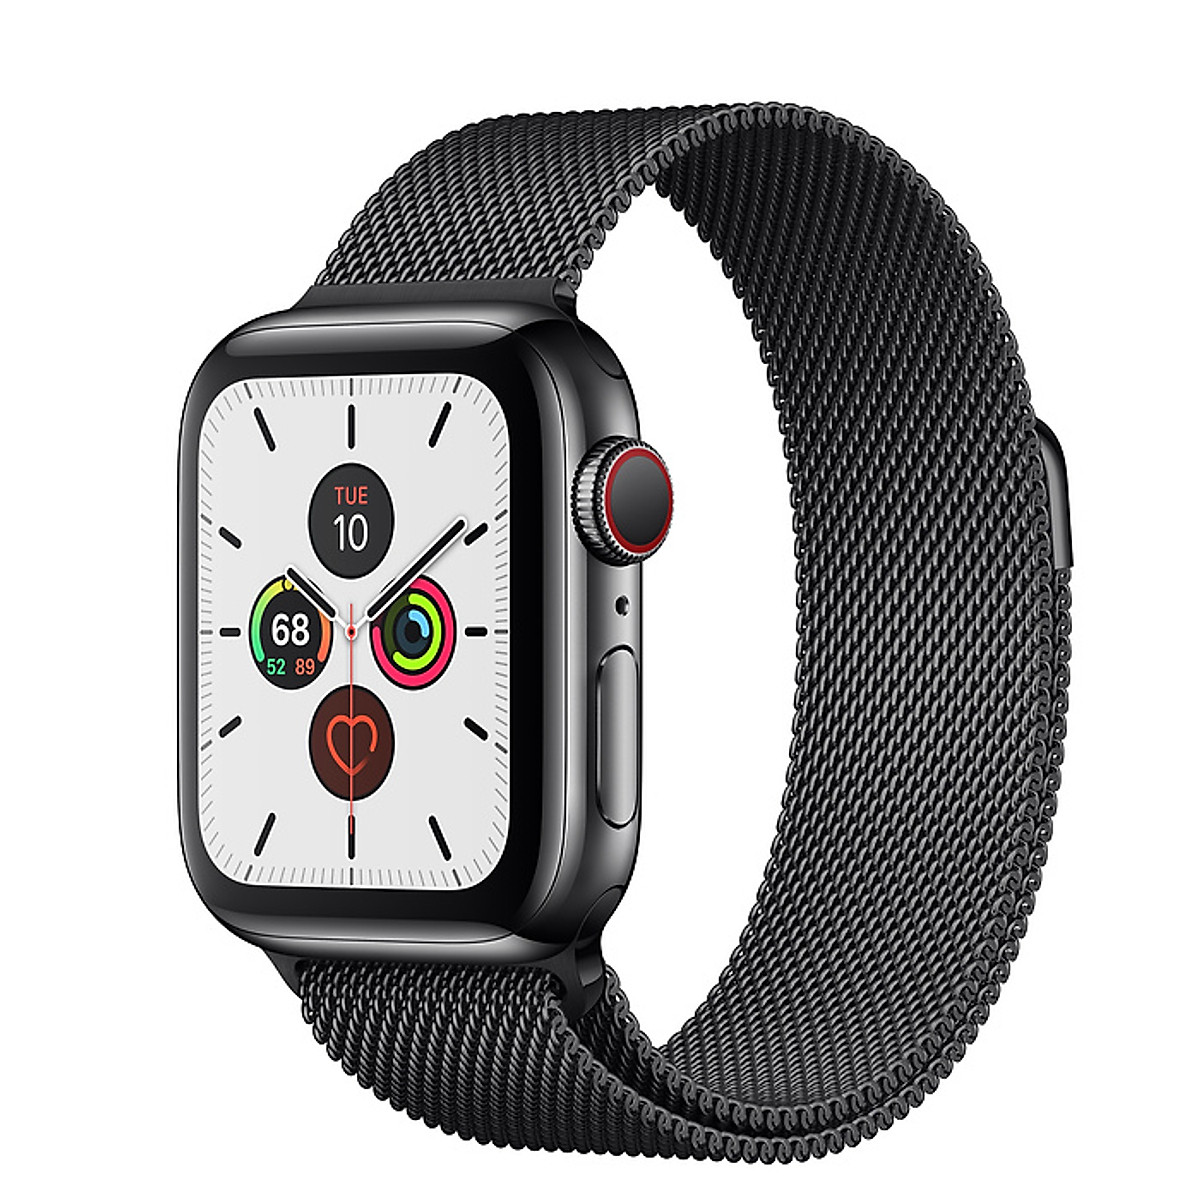 Đồng Hồ Thông Minh Apple Watch Series 5 LTE GPS + Cellular Stainless Steel  Case With Milanese Loop (Viền Thép & Dây Thép) - Hàng Chính Hãng VN/A